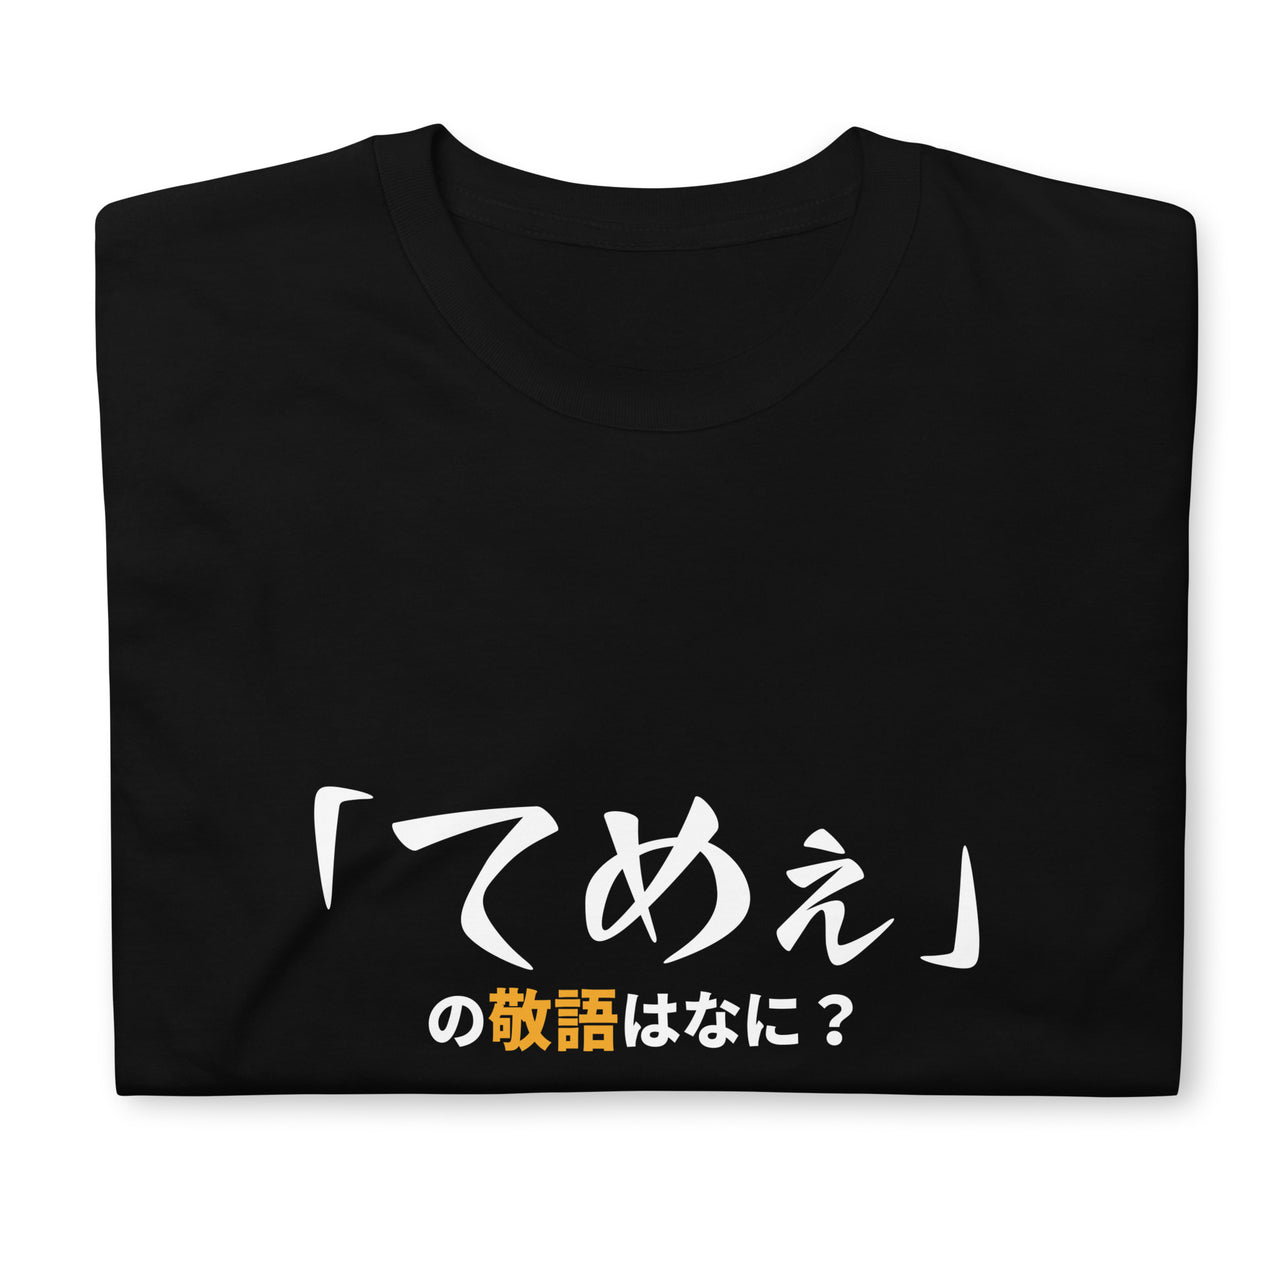 Politely Insult in Japanese Short-Sleeve Unisex T-Shirt